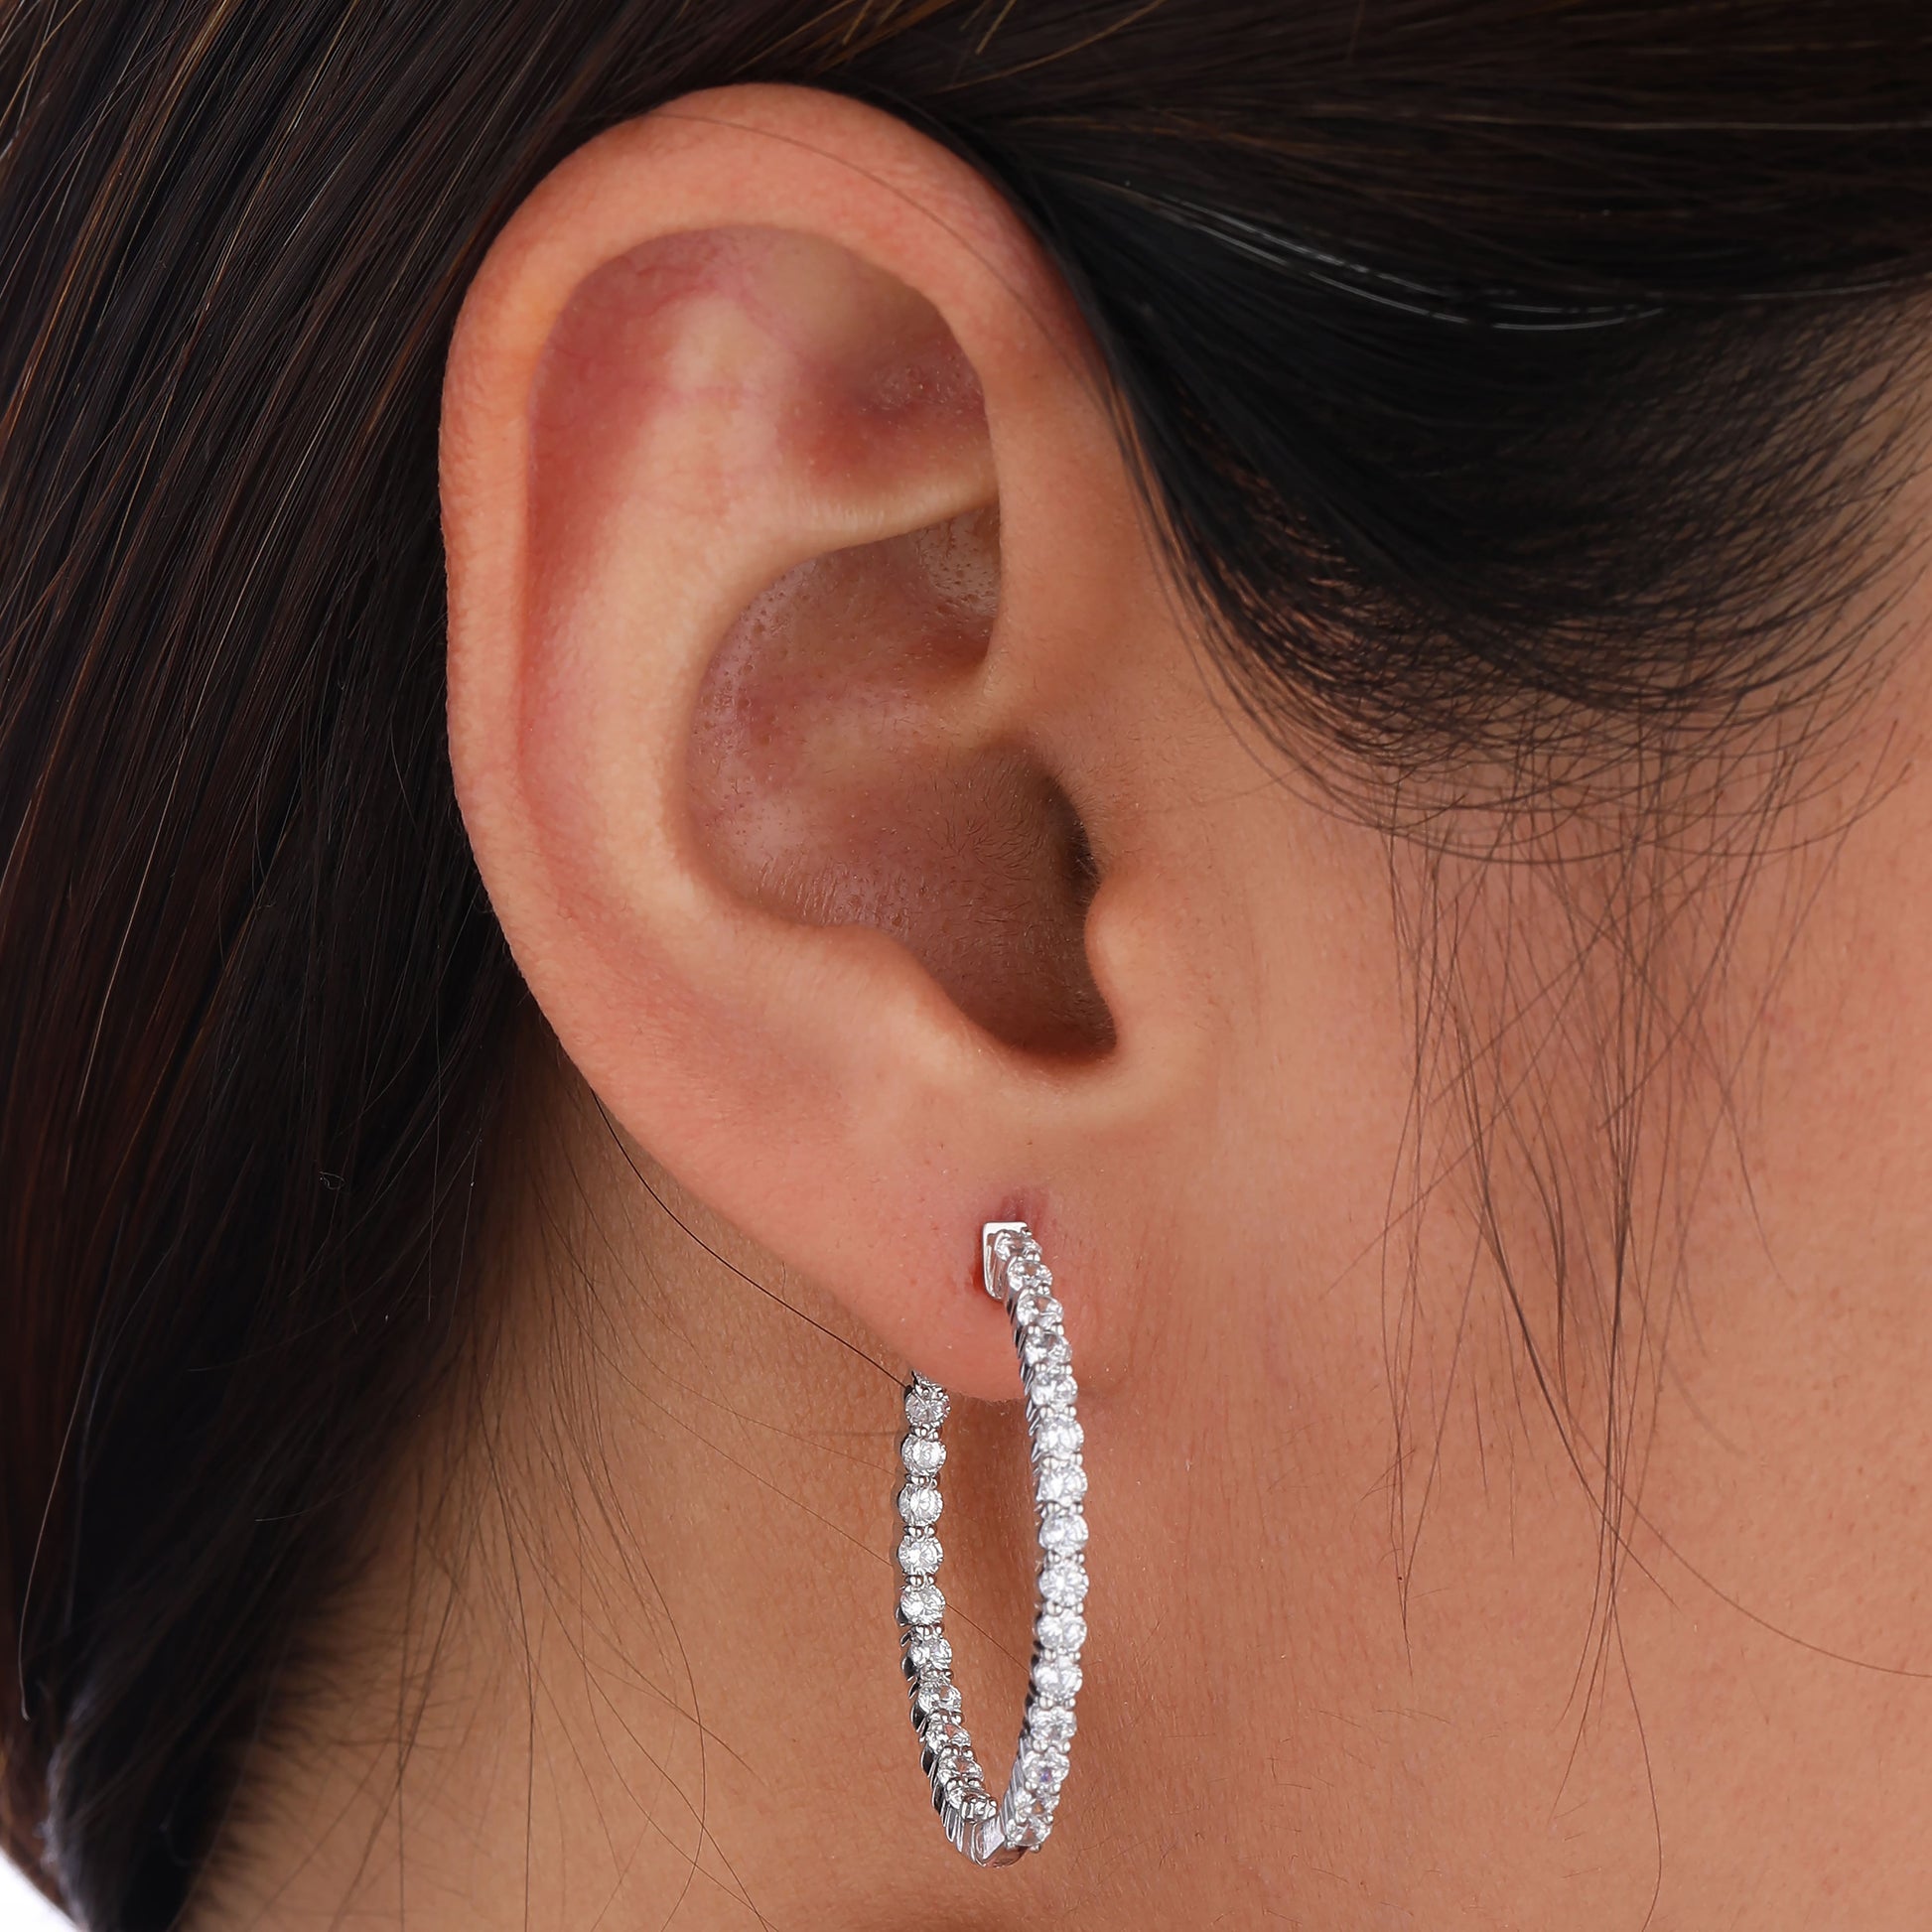 lab grown diamond hoop earring in model ear